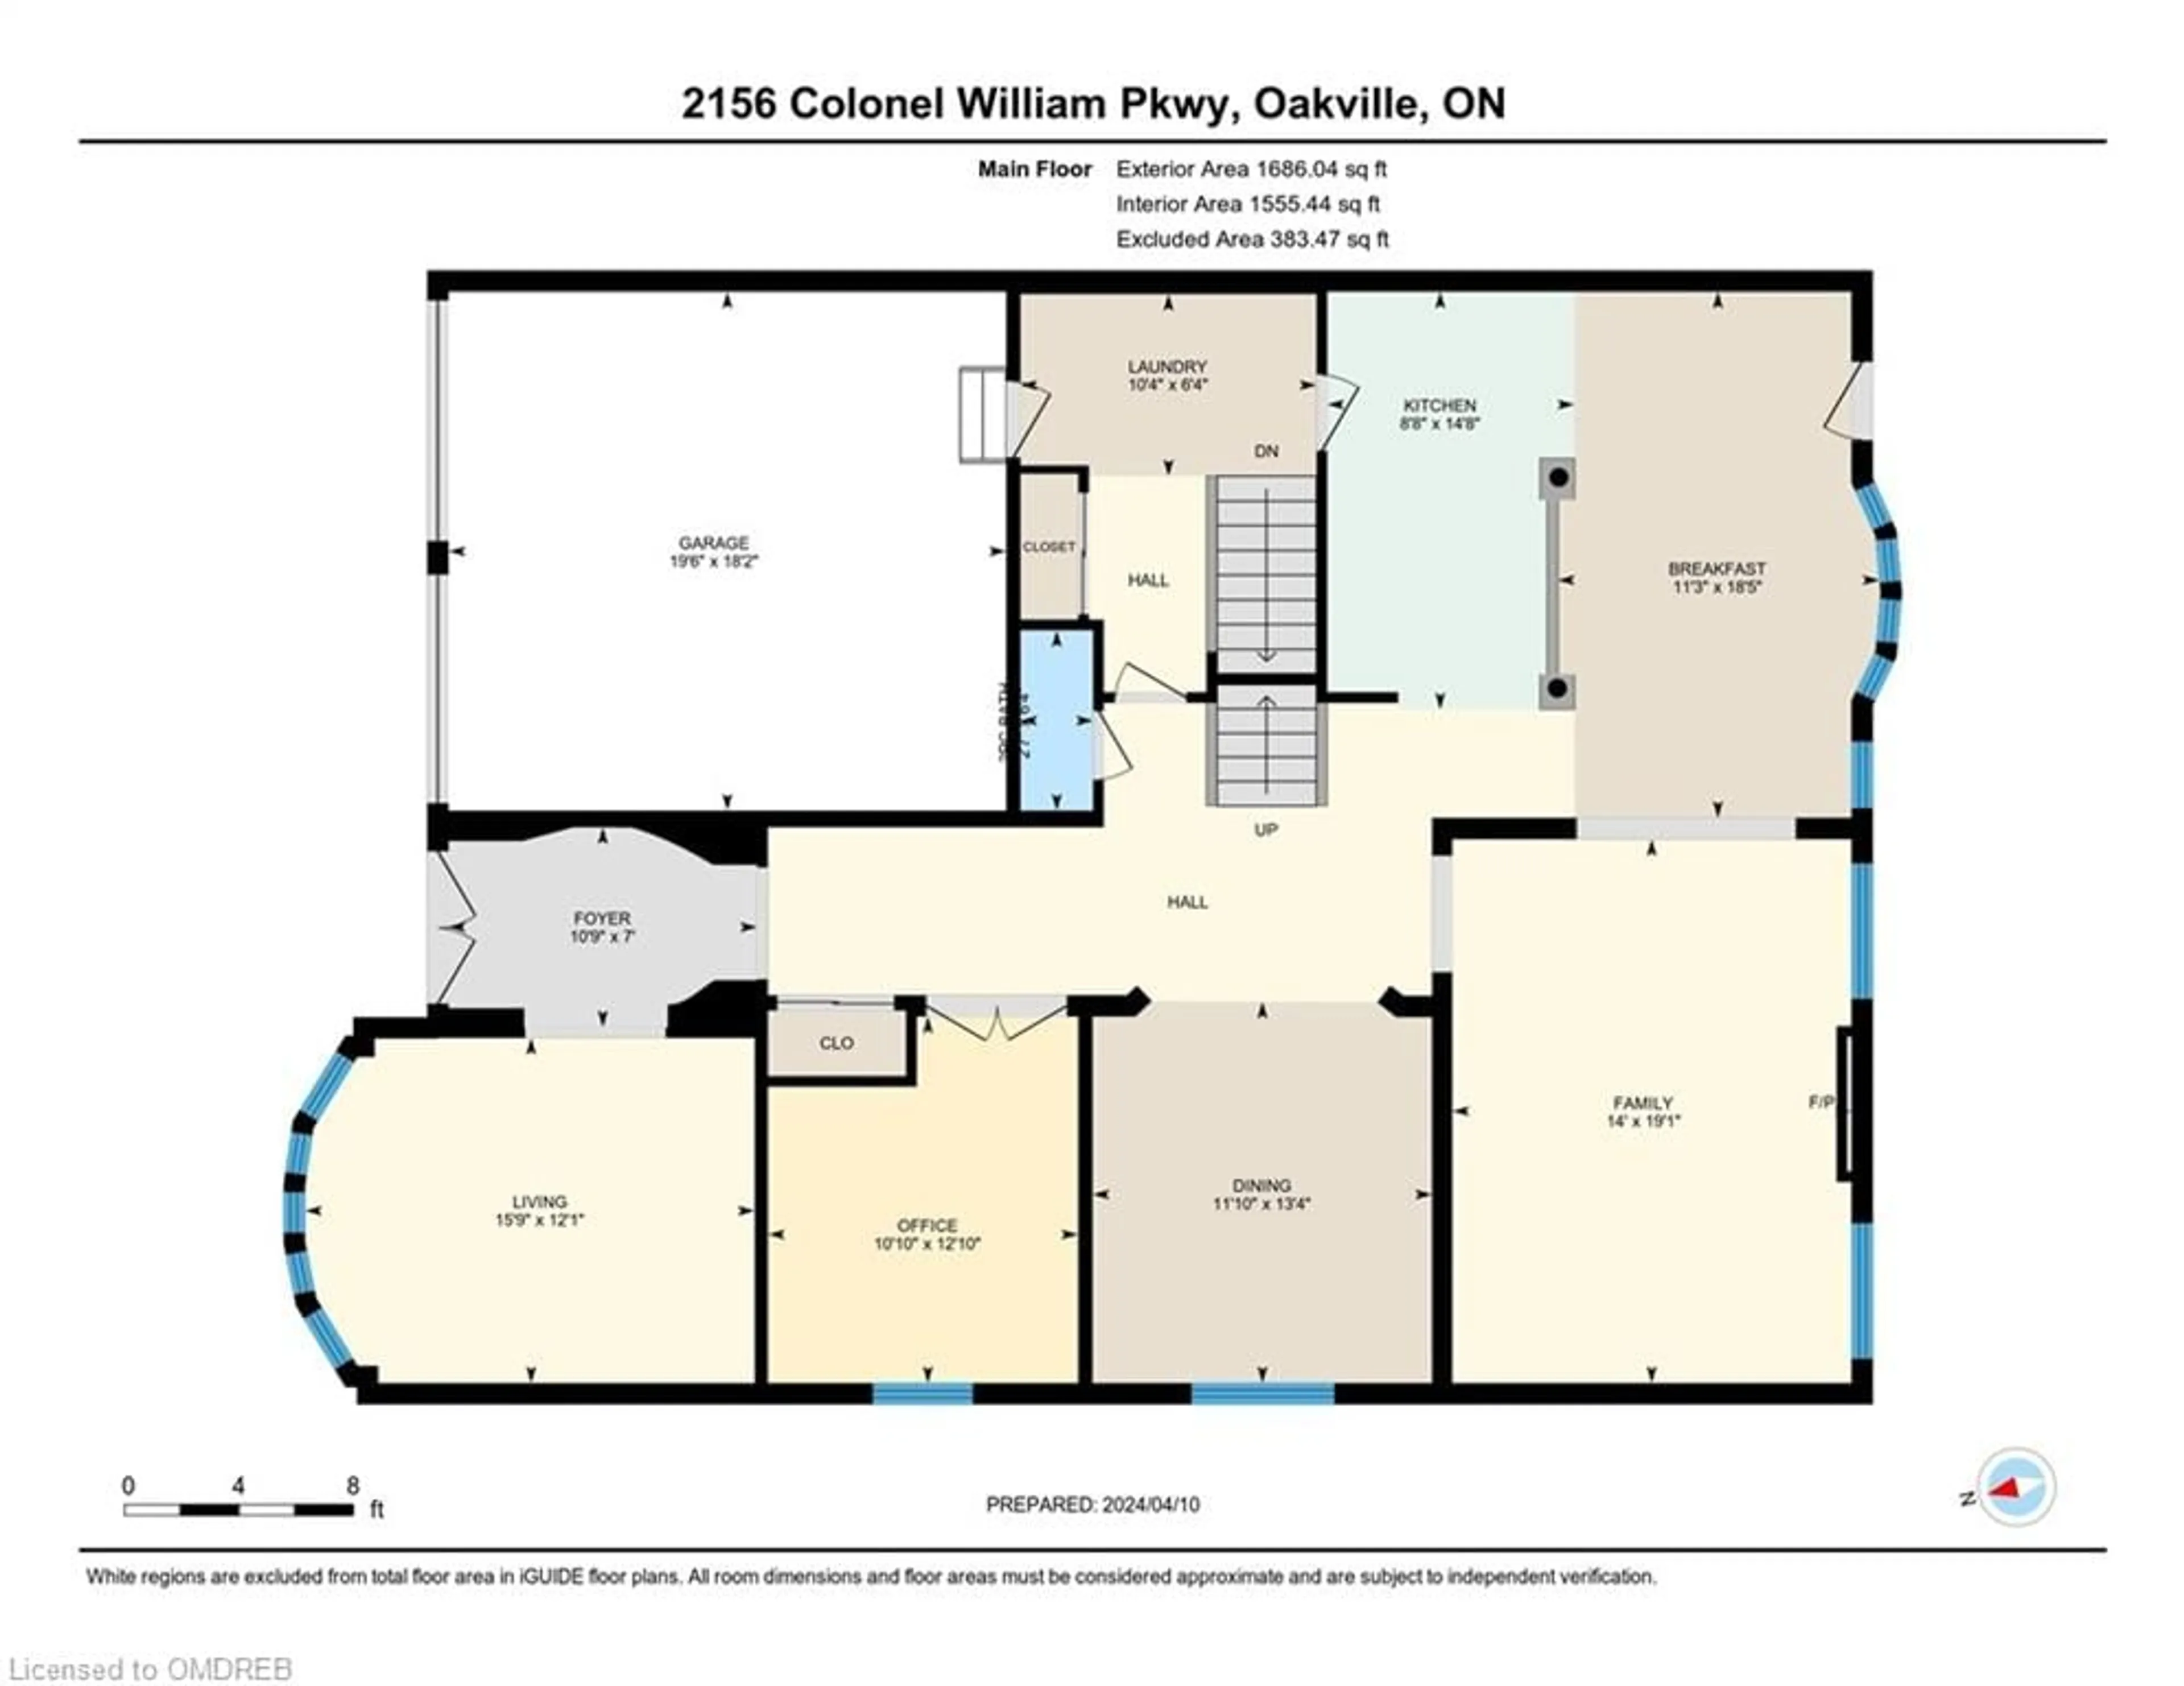 Floor plan for 2156 Colonel William Pky, Oakville Ontario L6M 0B8